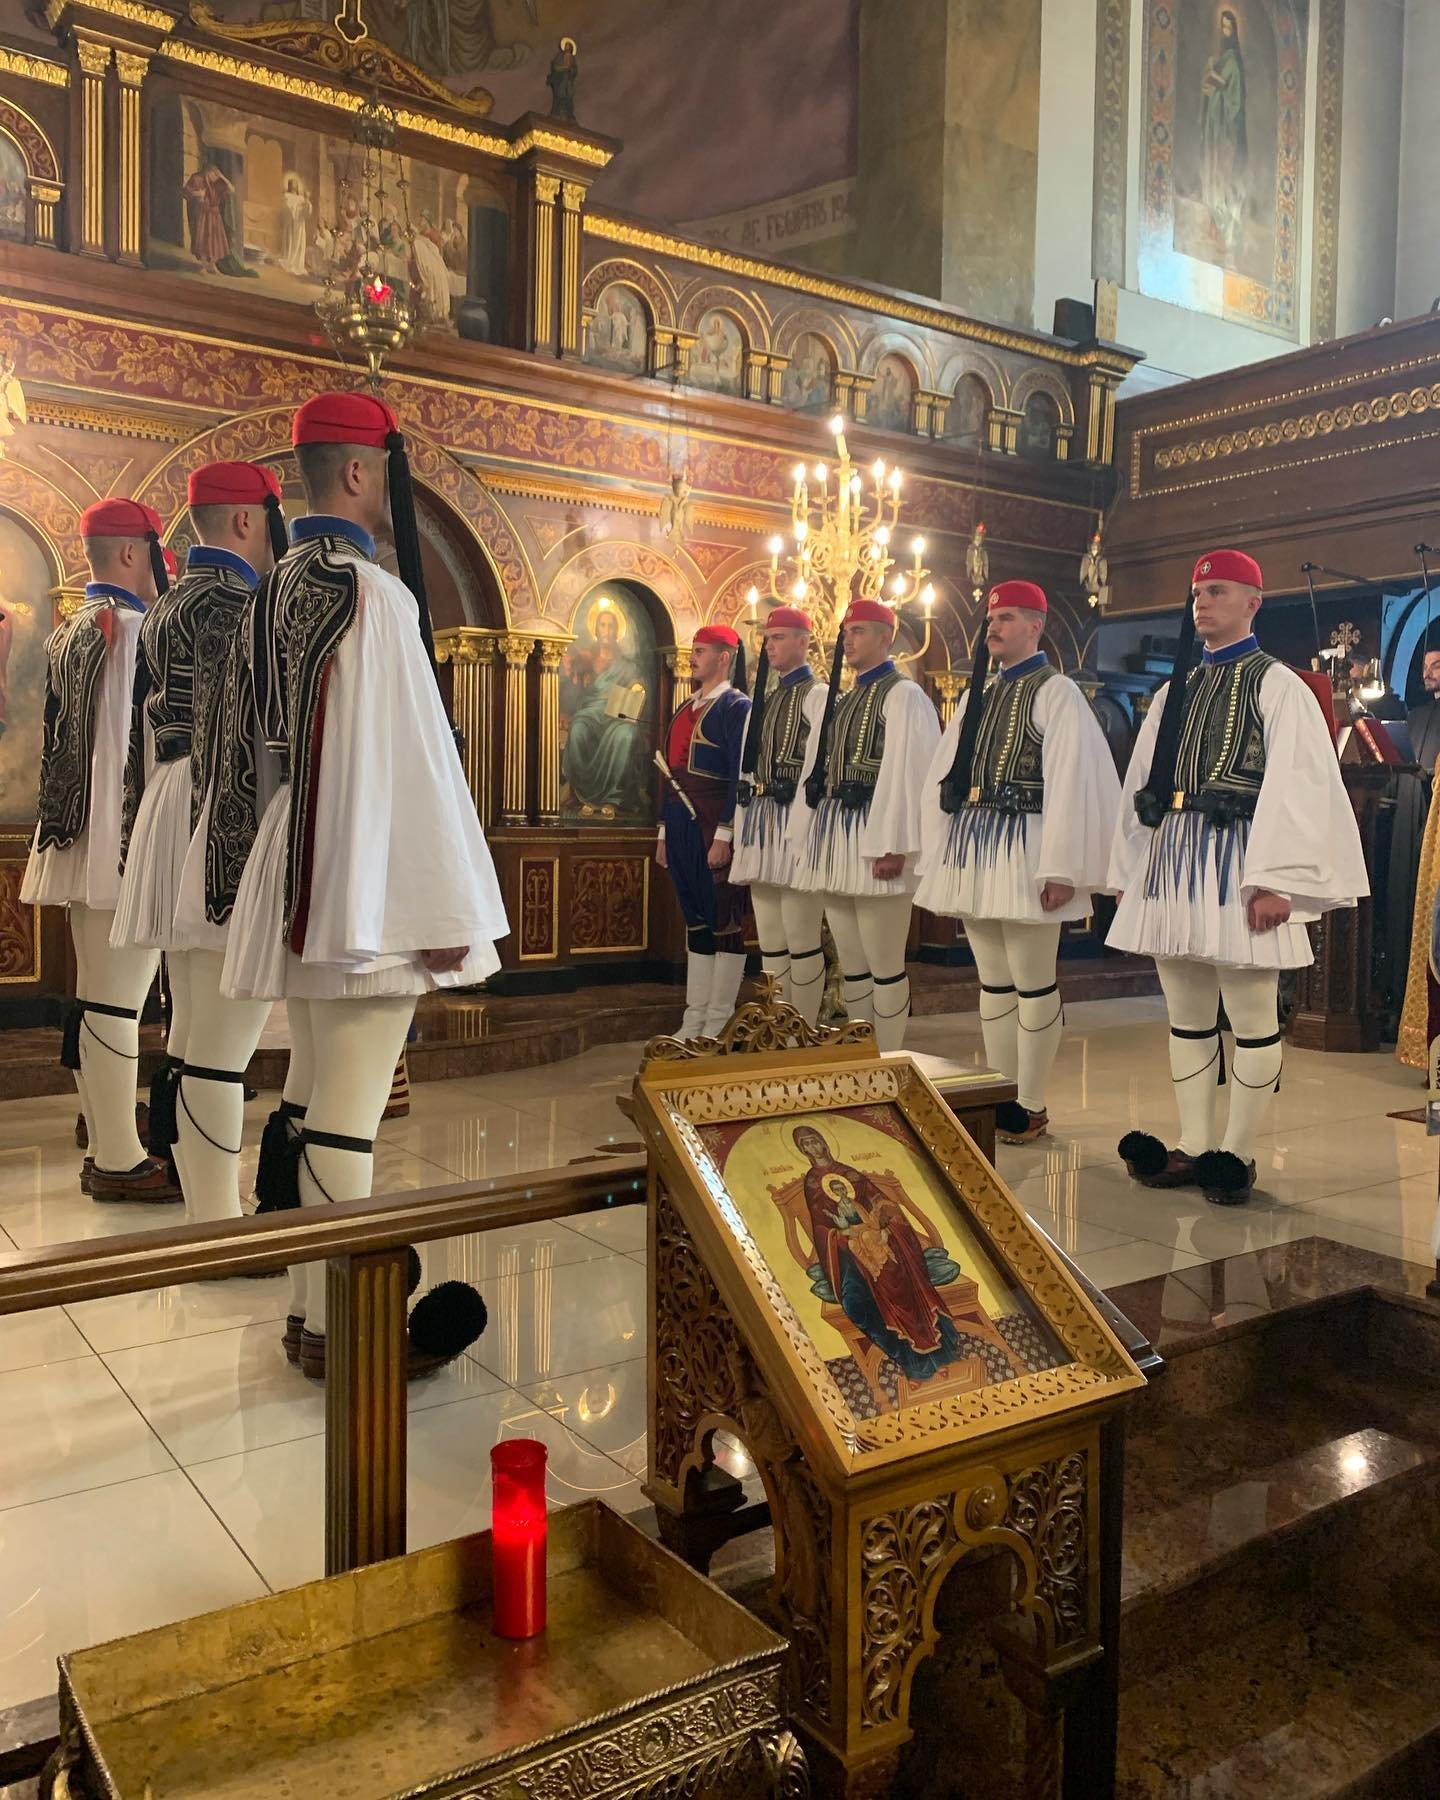  Greek Evzones at the St. George Greek Orthodox Cathedral in Philadelphia.  